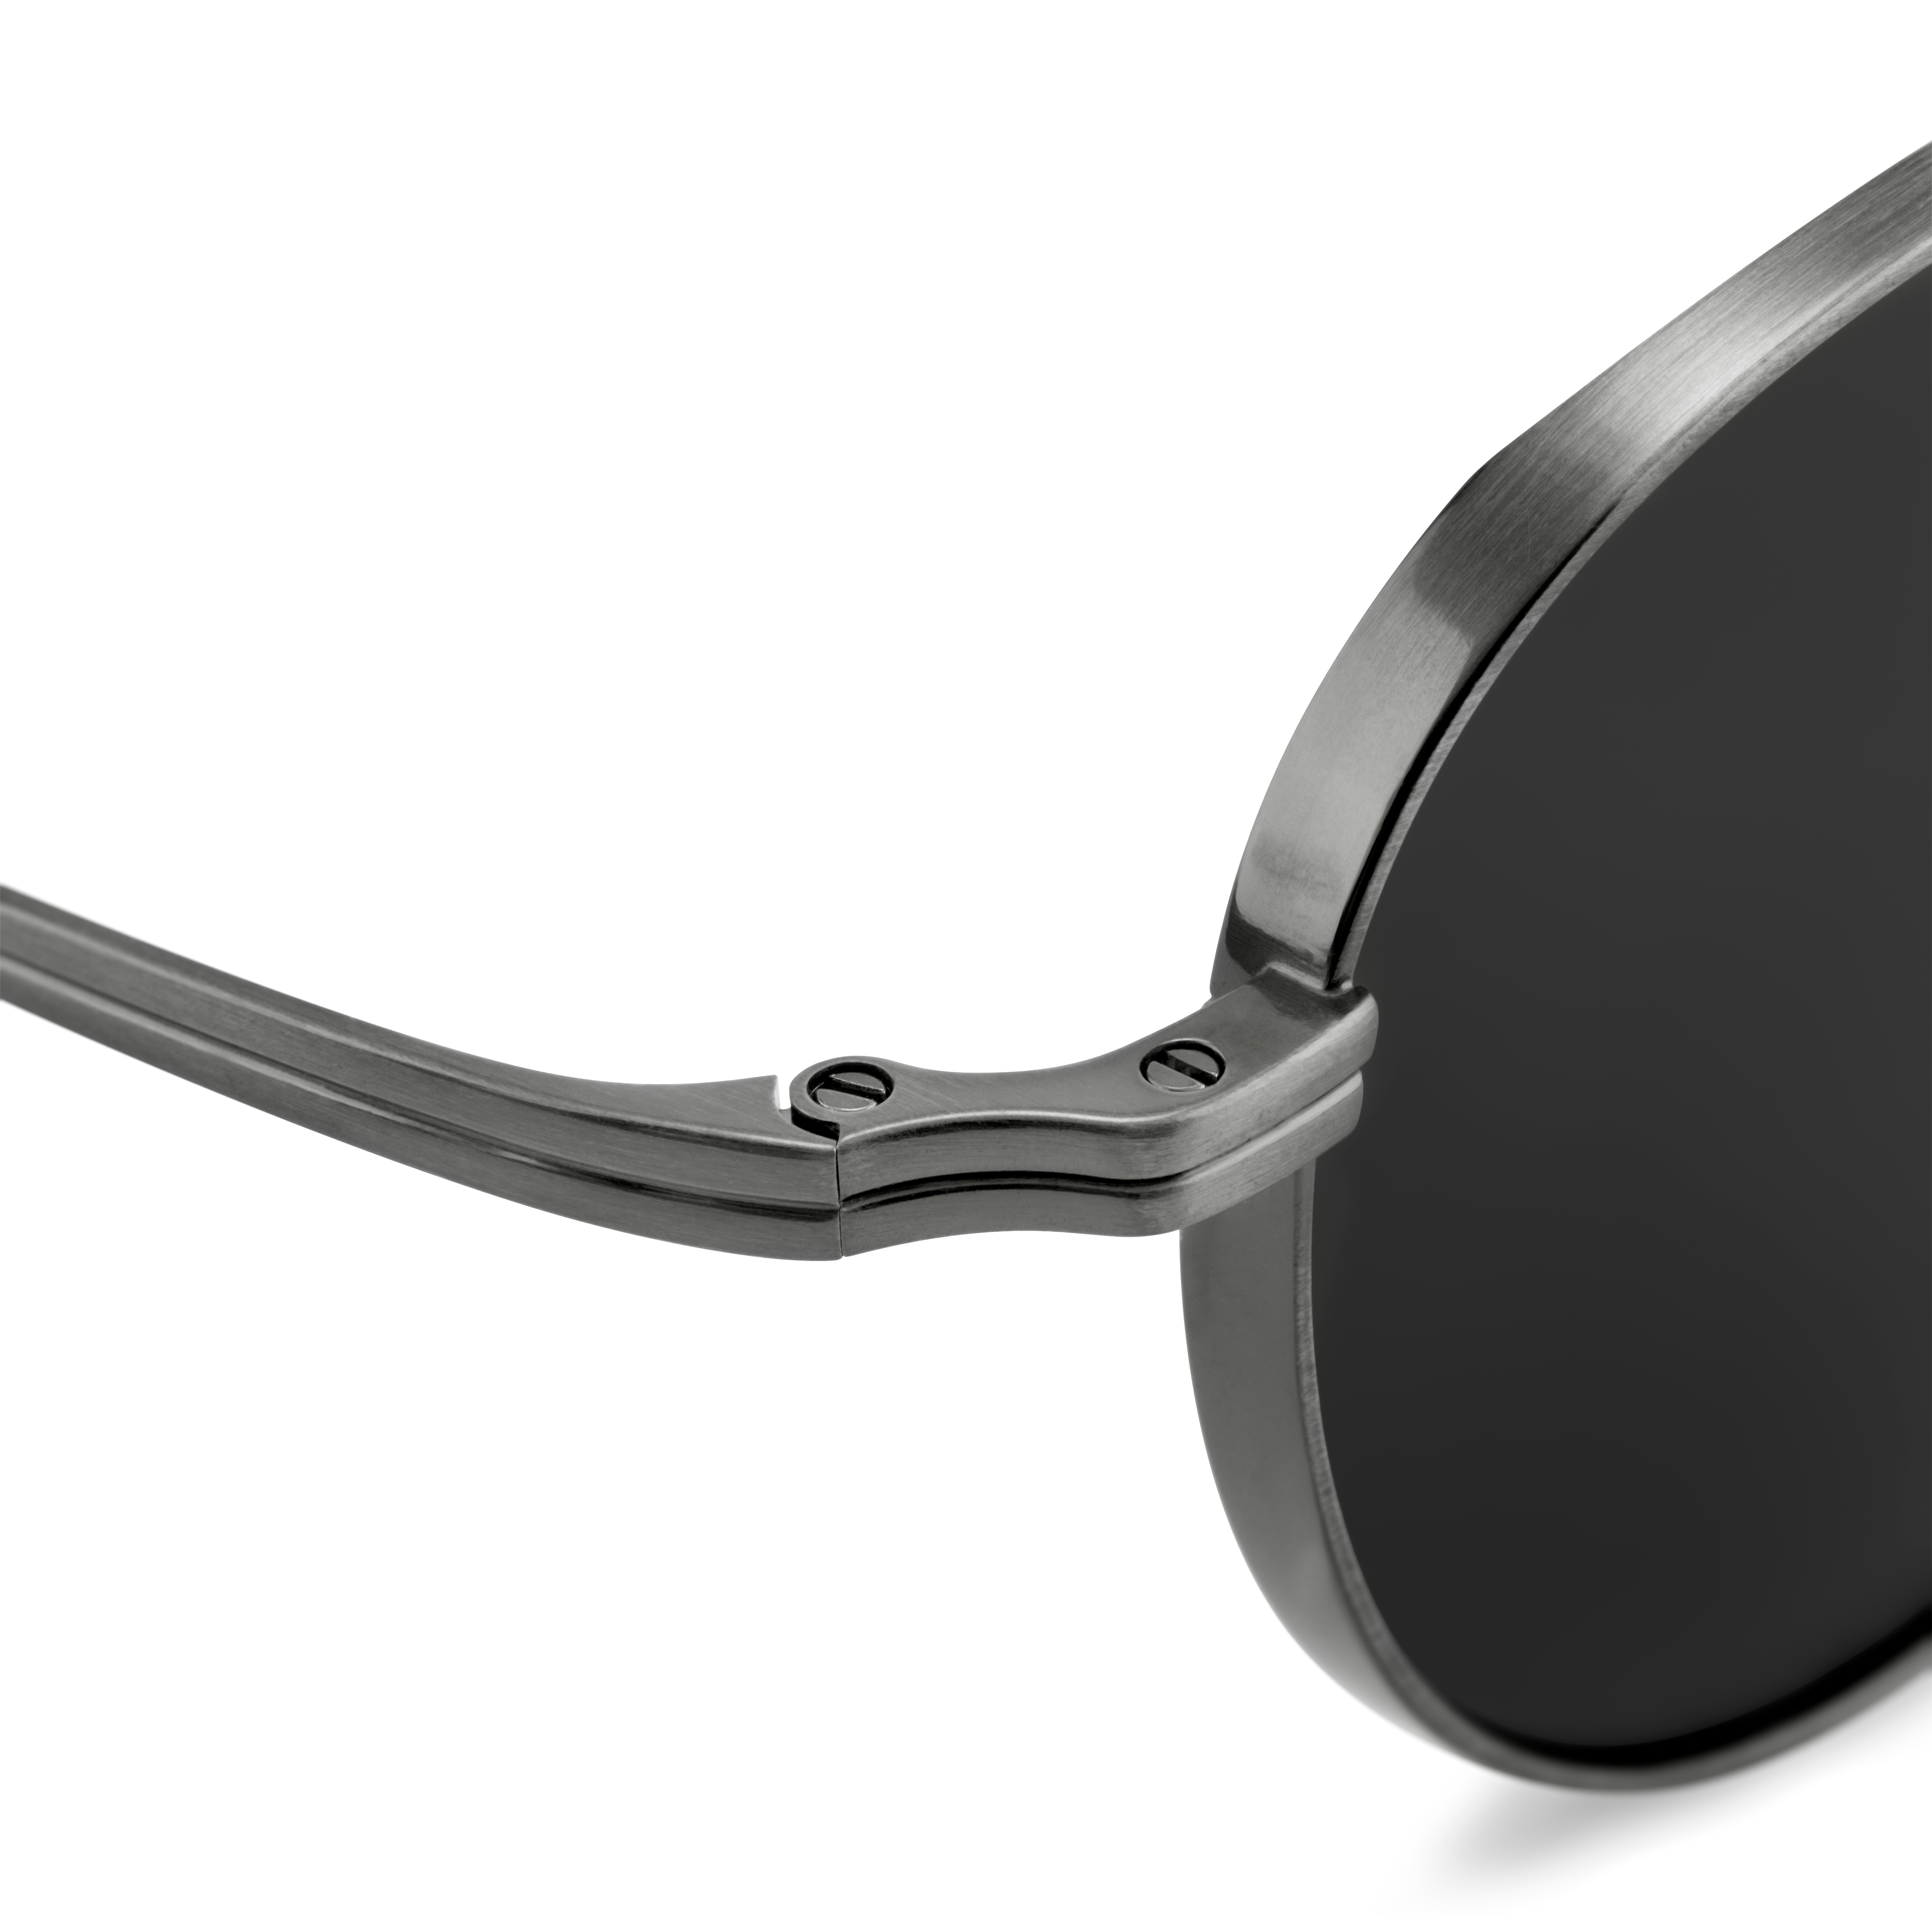 Occasus, Translucent Gray Square Polarized Sunglasses, In stock!